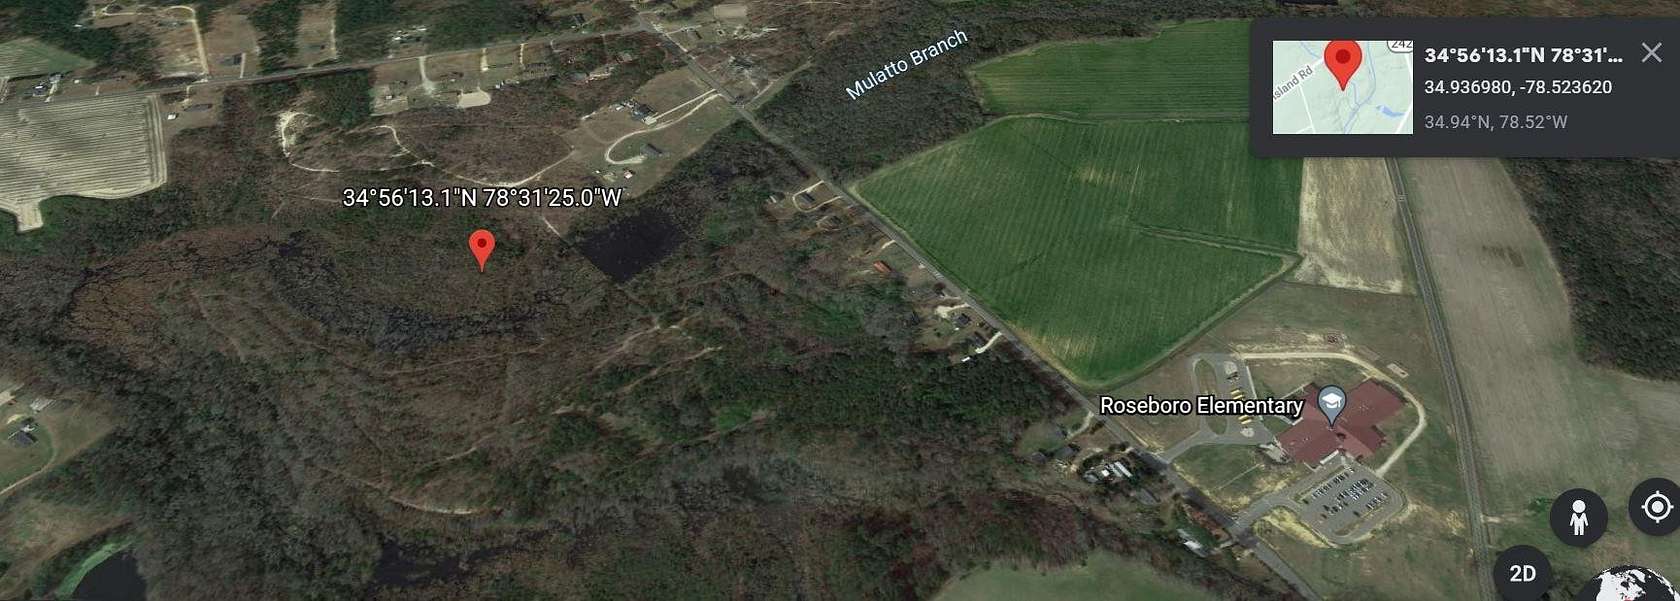 Land for Sale in Roseboro, North Carolina